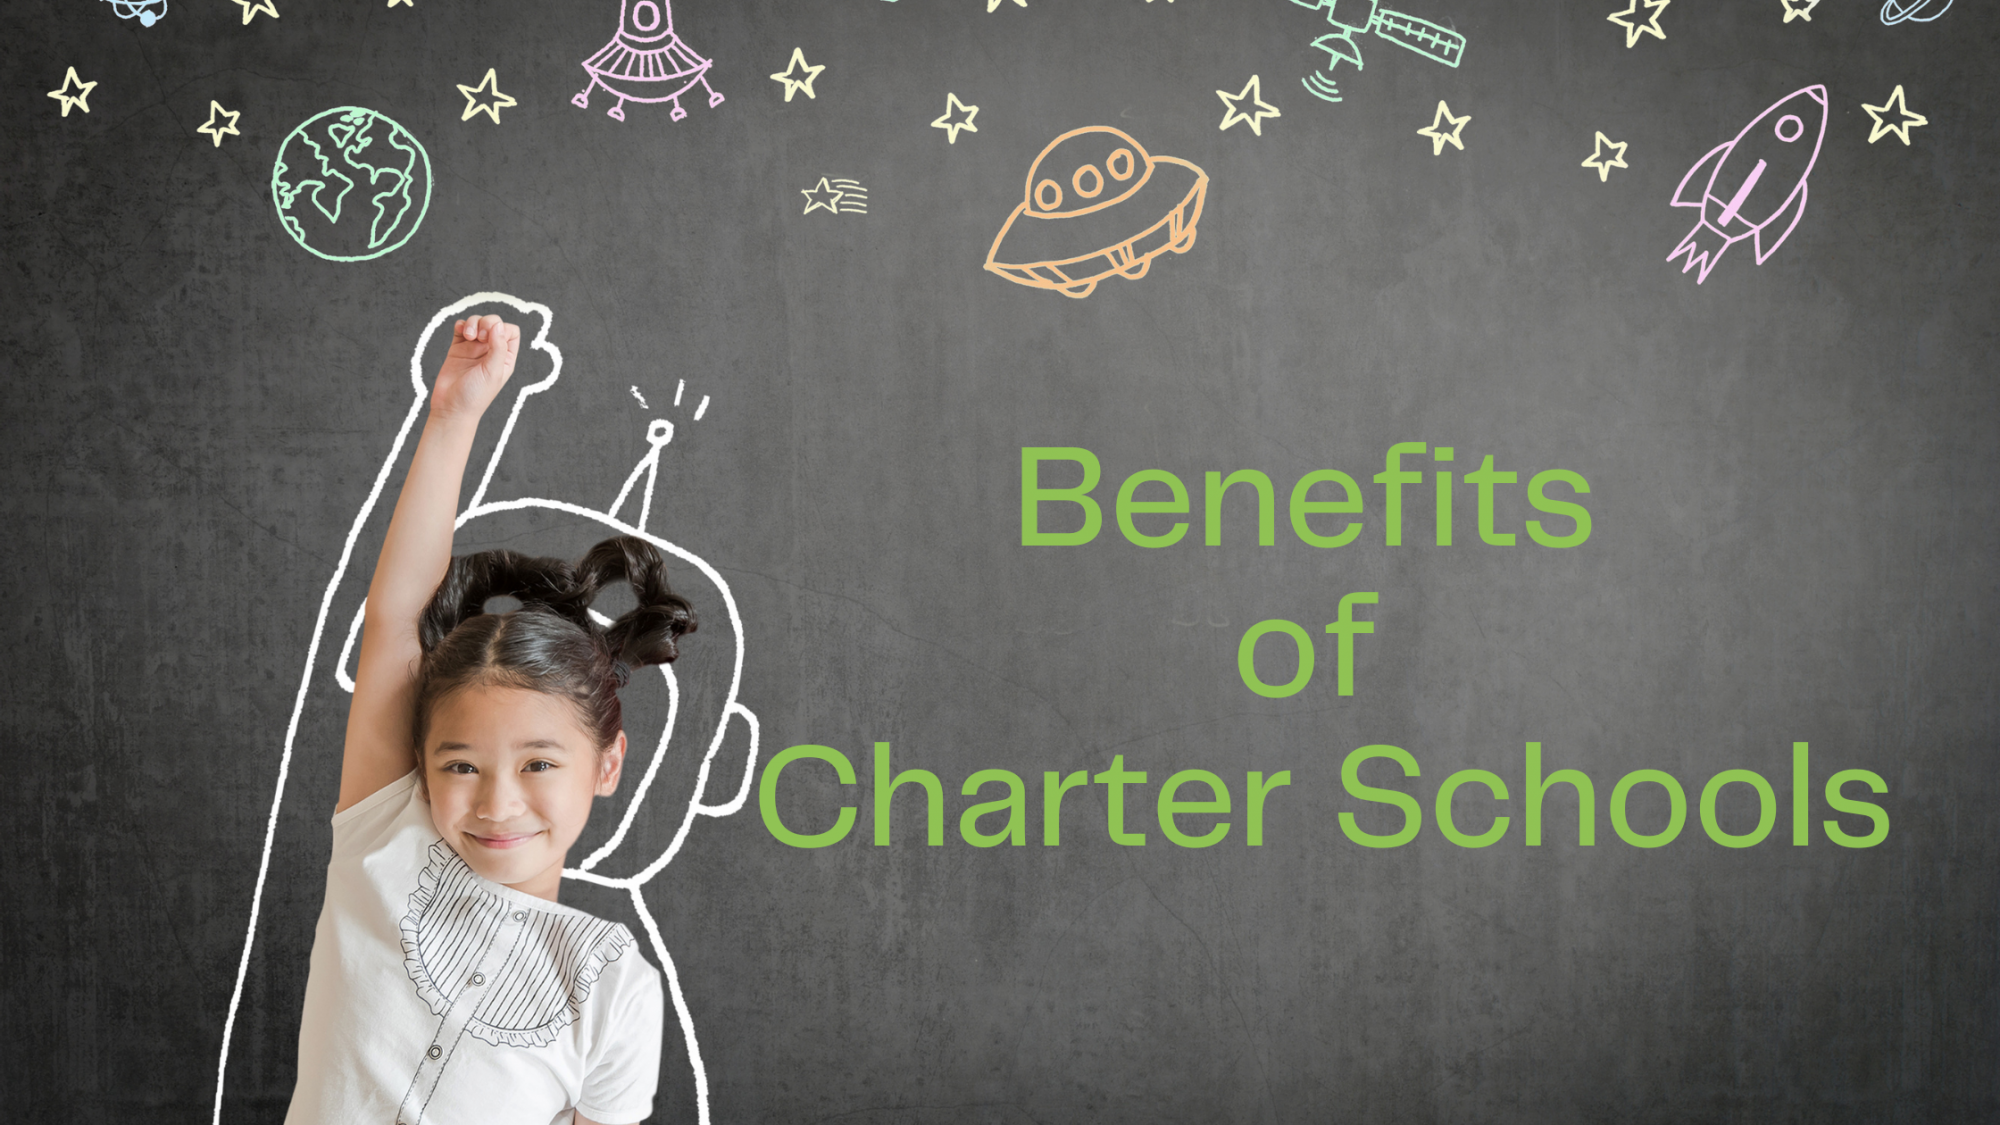 Benefits of Charter Schools